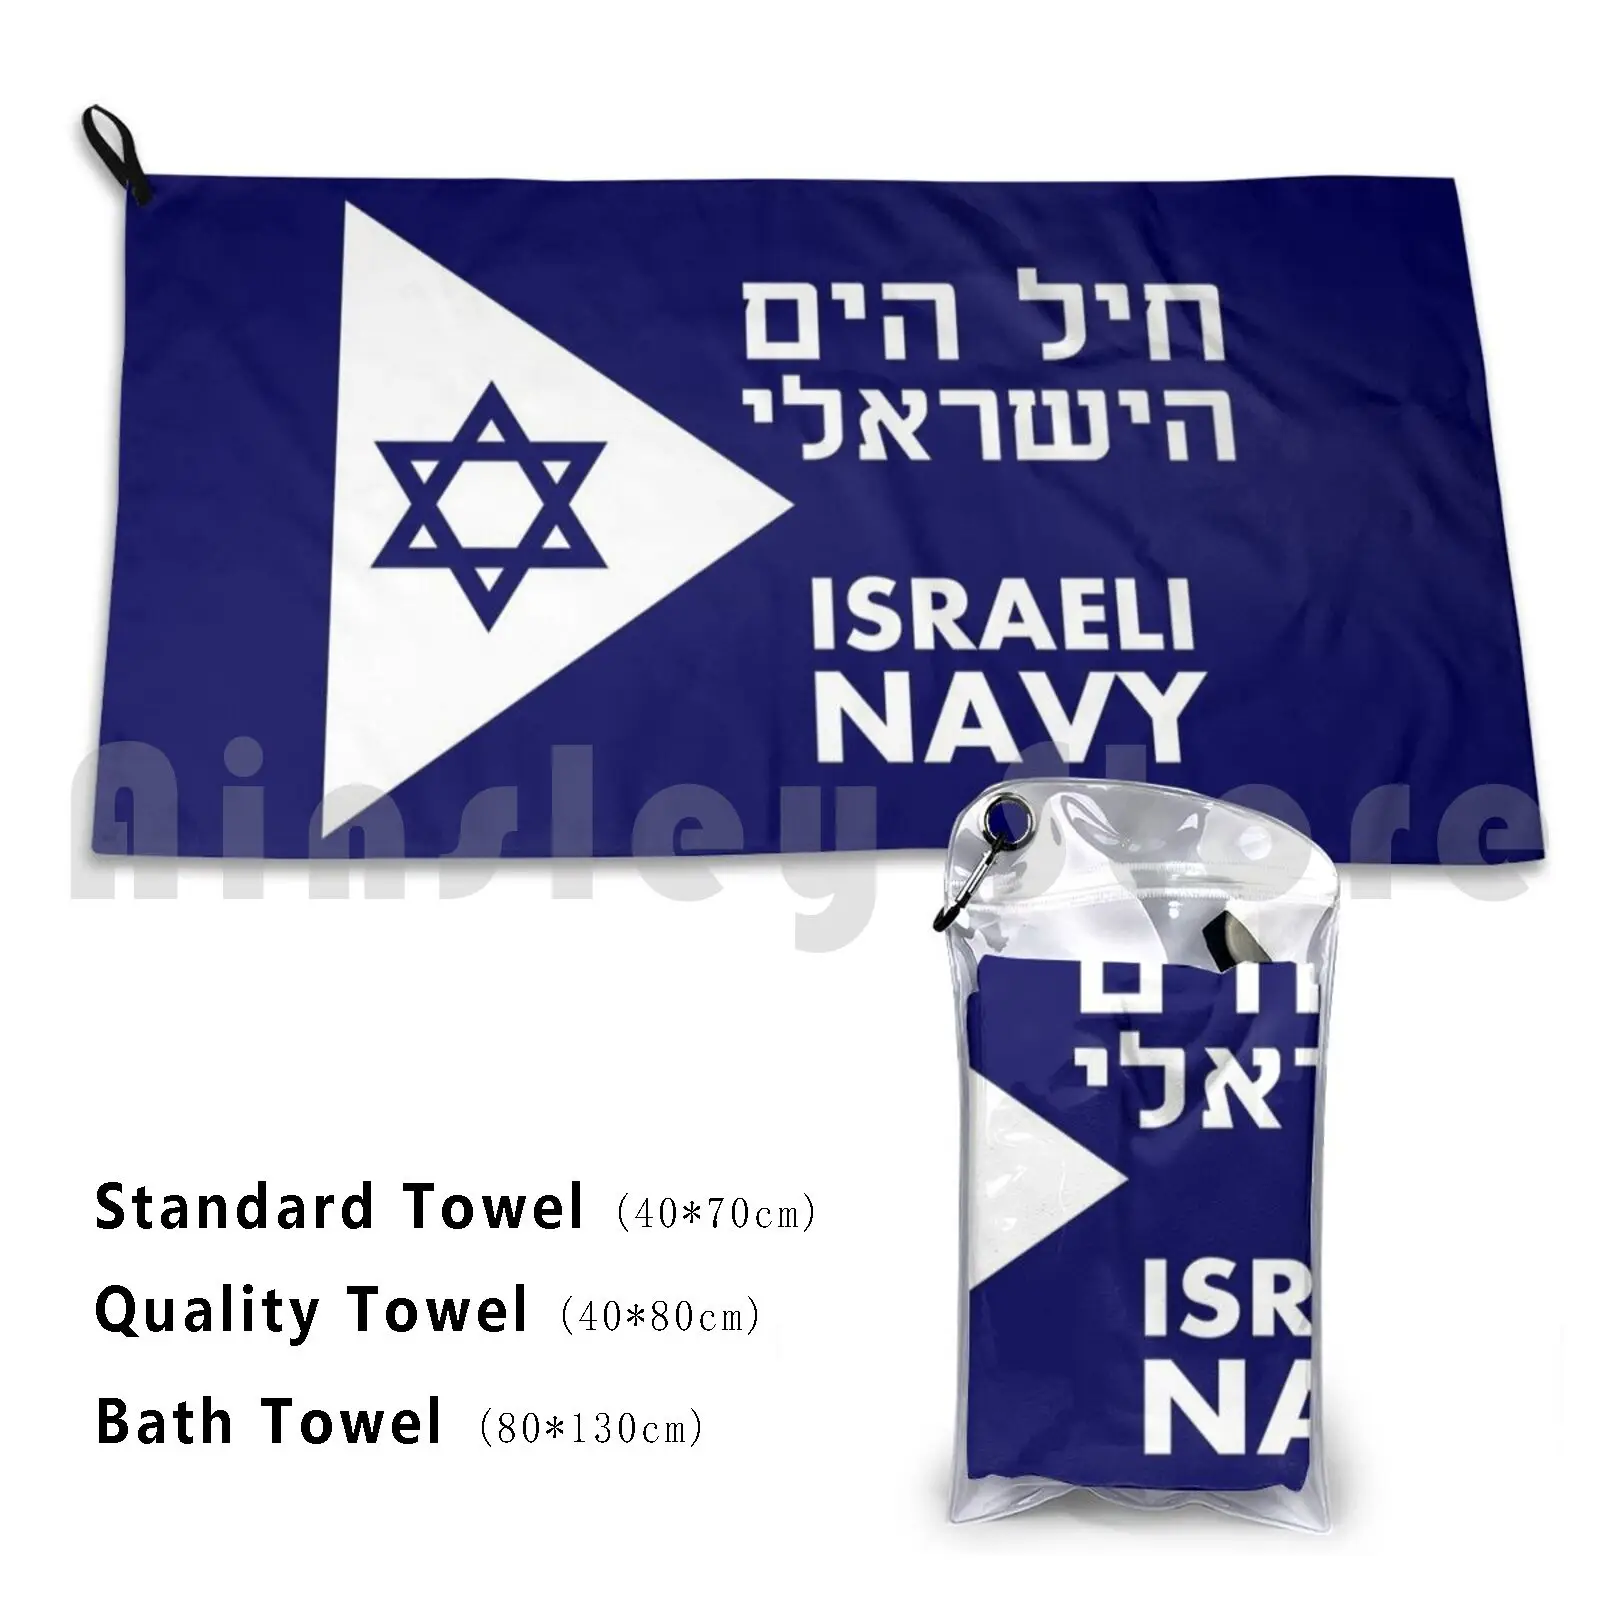 

Towel             -Israeli Navy 748 Israel Israel Hebrew Judaism Jewish Jew Yiddish